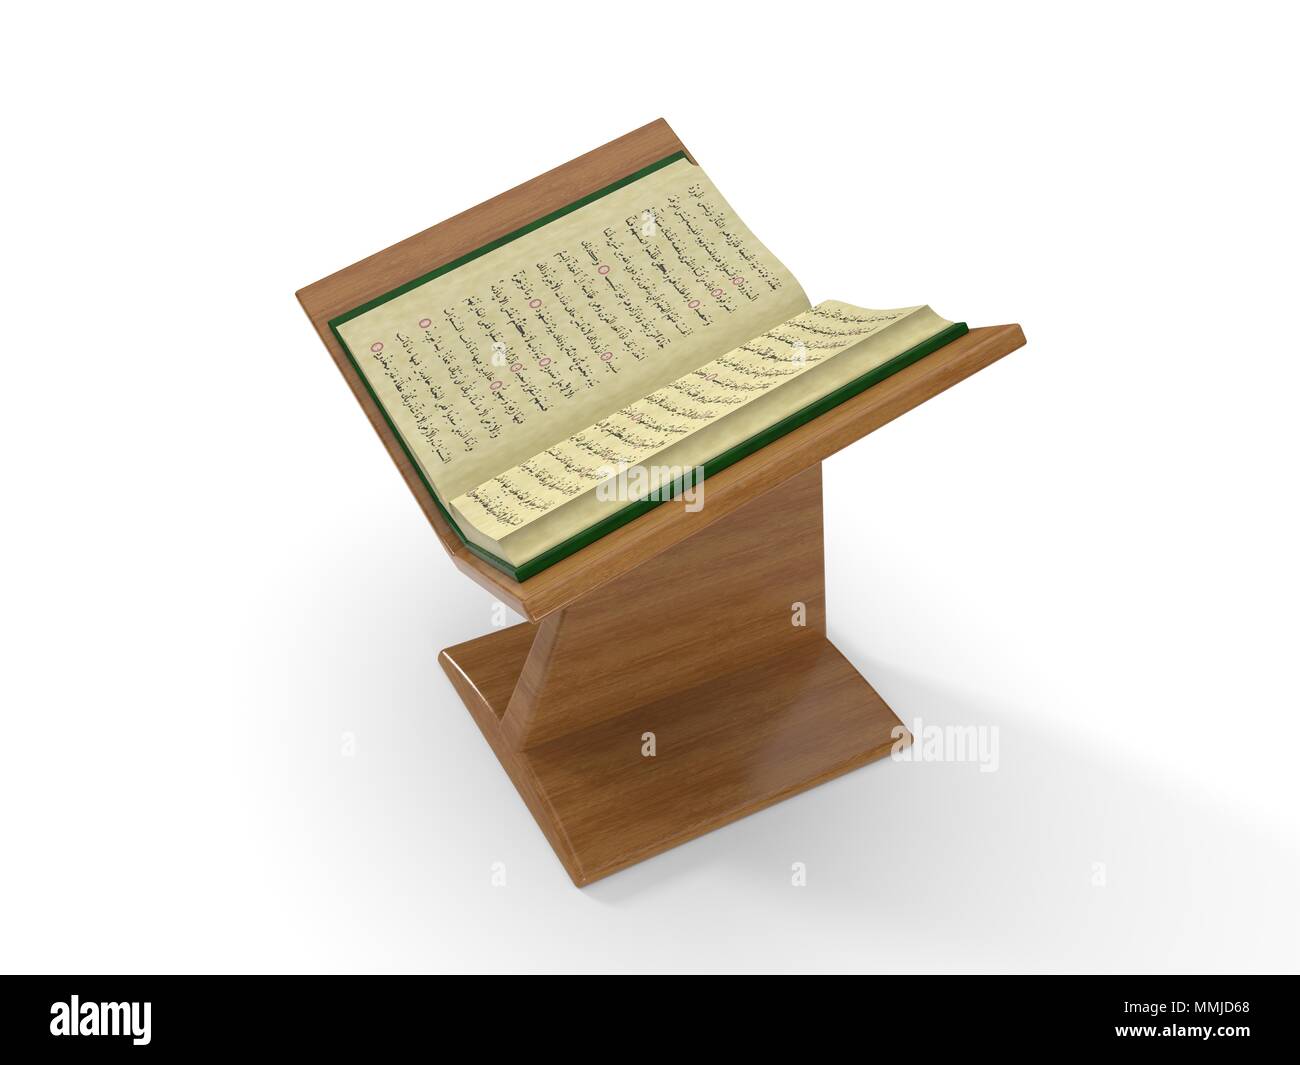 Coran livre sur la plate-forme. 3d illustration. isolated on white Banque D'Images